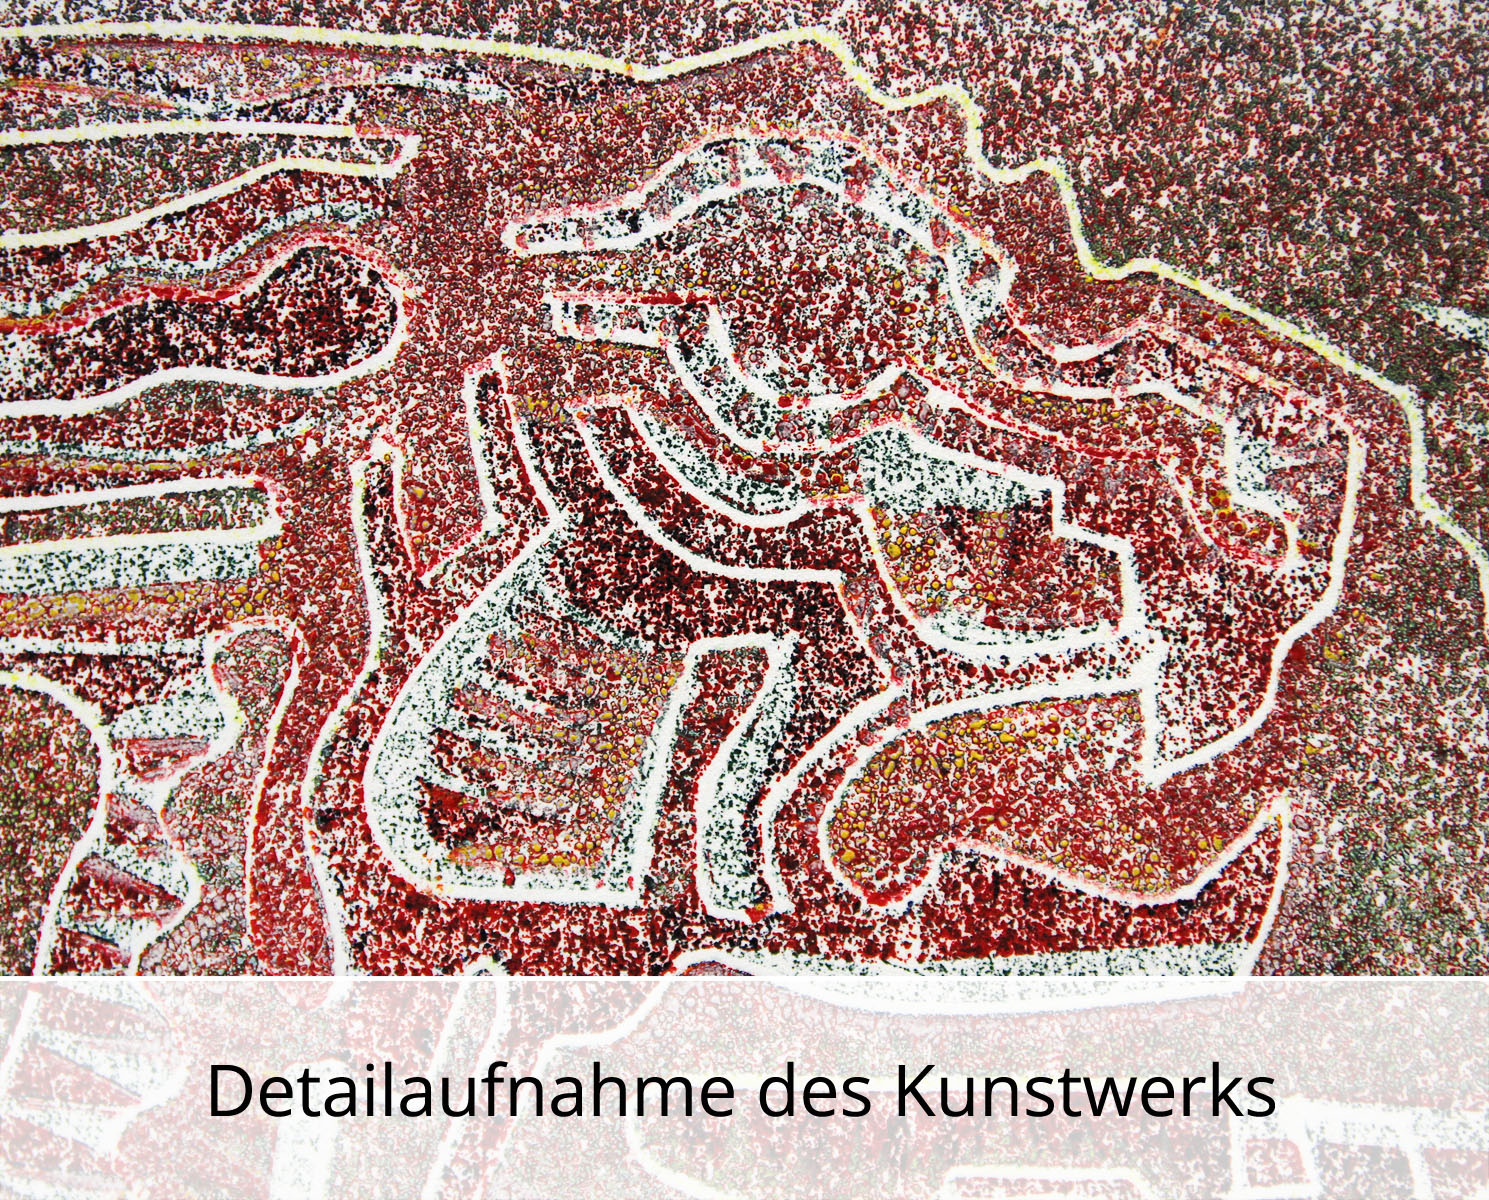 F.O. Haake: "Kampf der Dämonen - Blatt 03/20", originale Grafik/serielles Unikat, Linoldruck